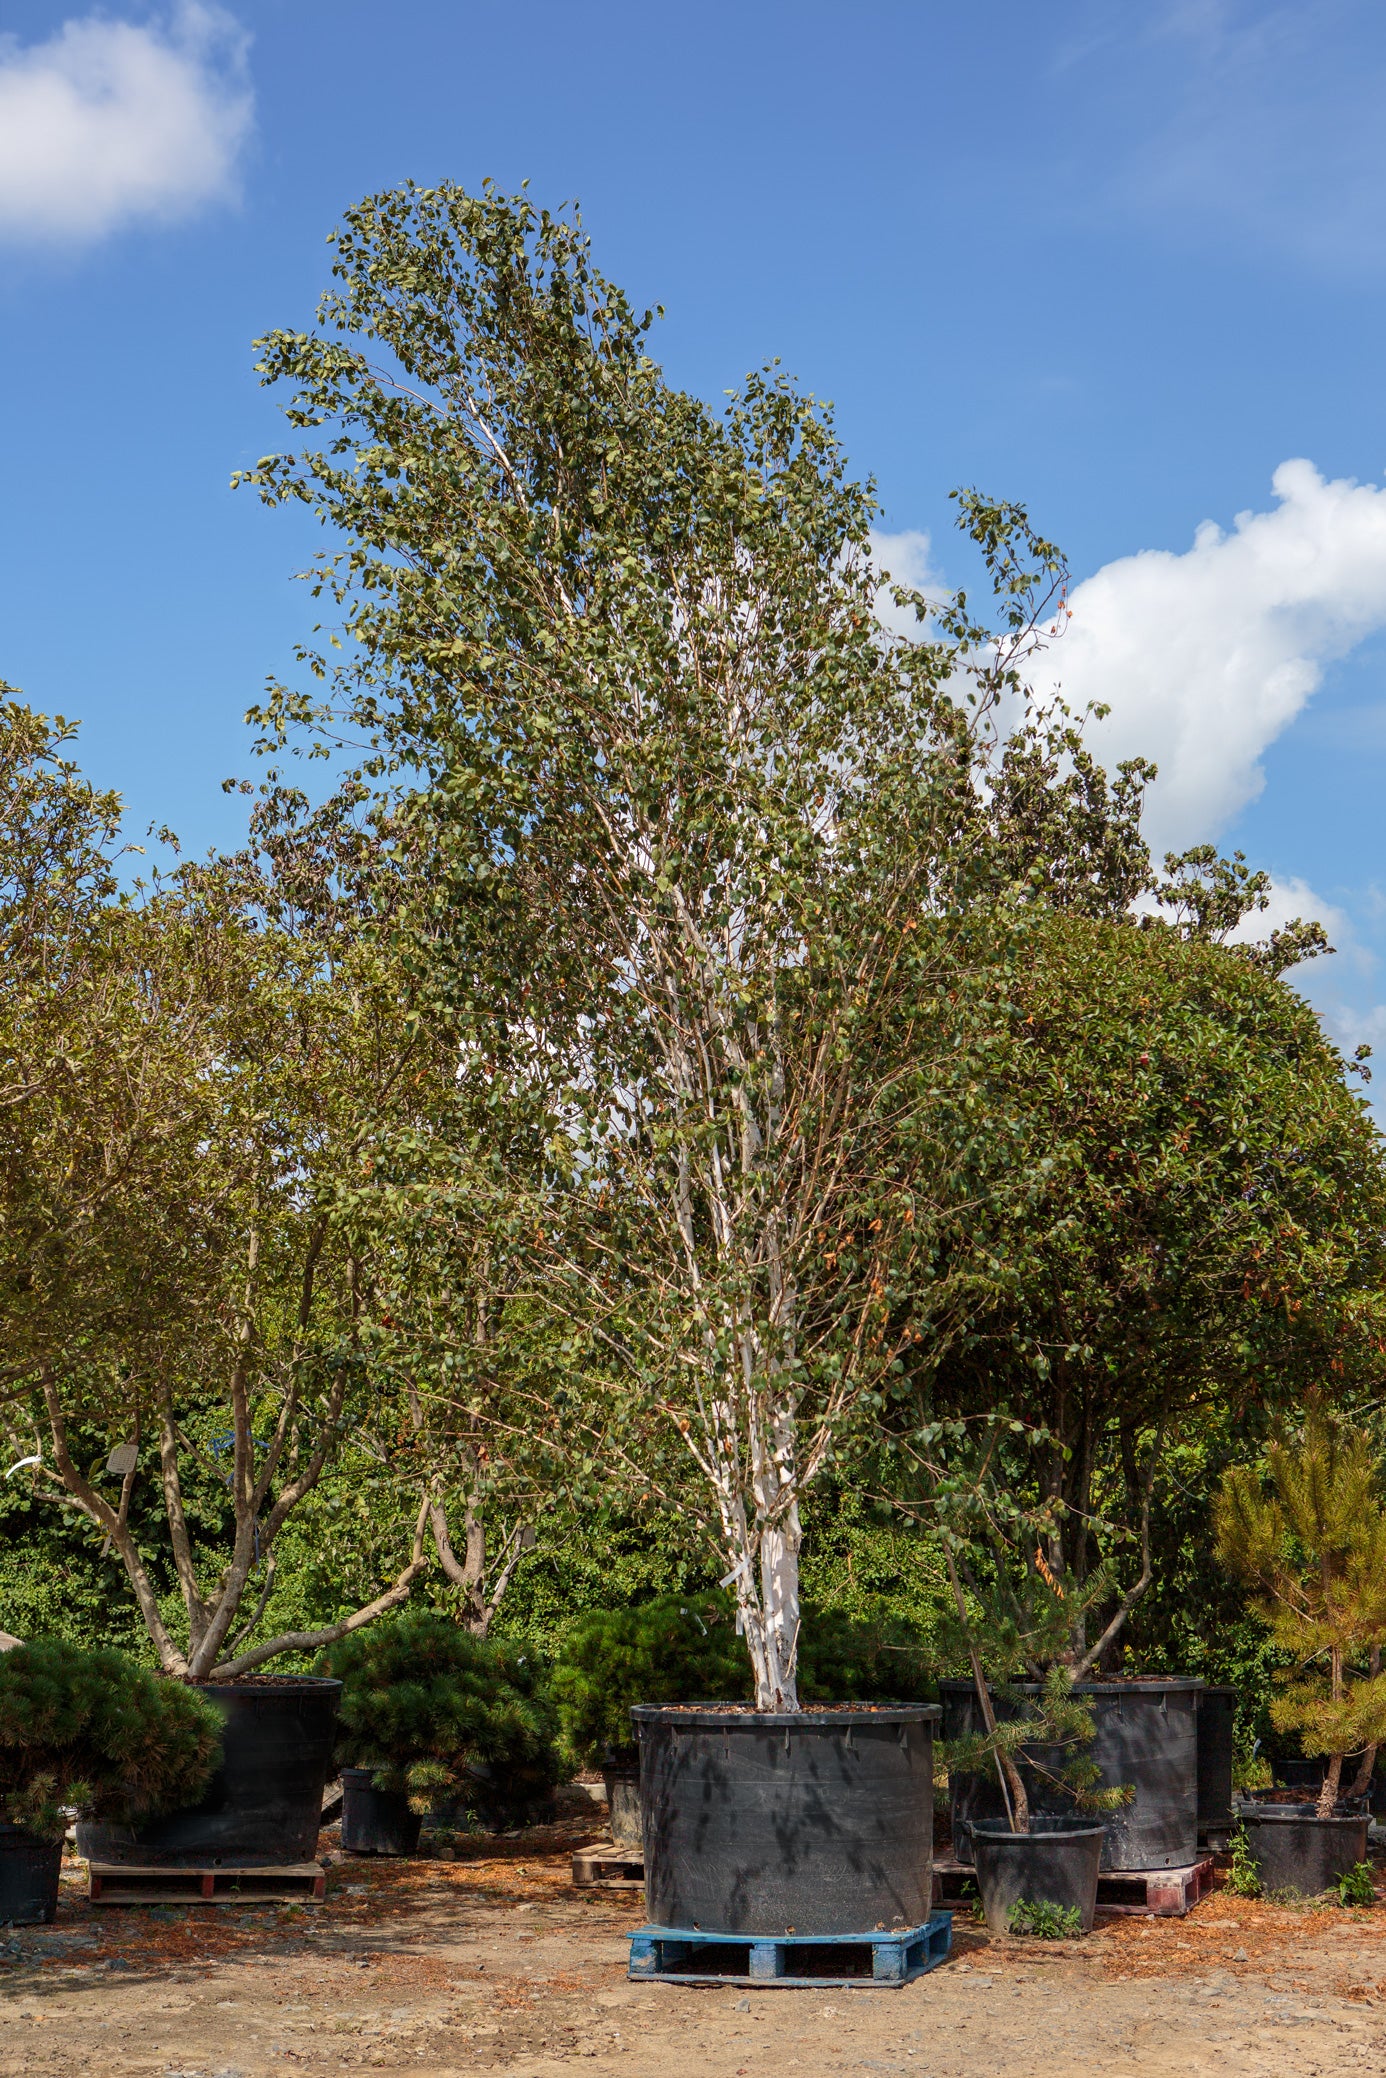 Betula utilis jacquemontii - Himalayan Birch tree